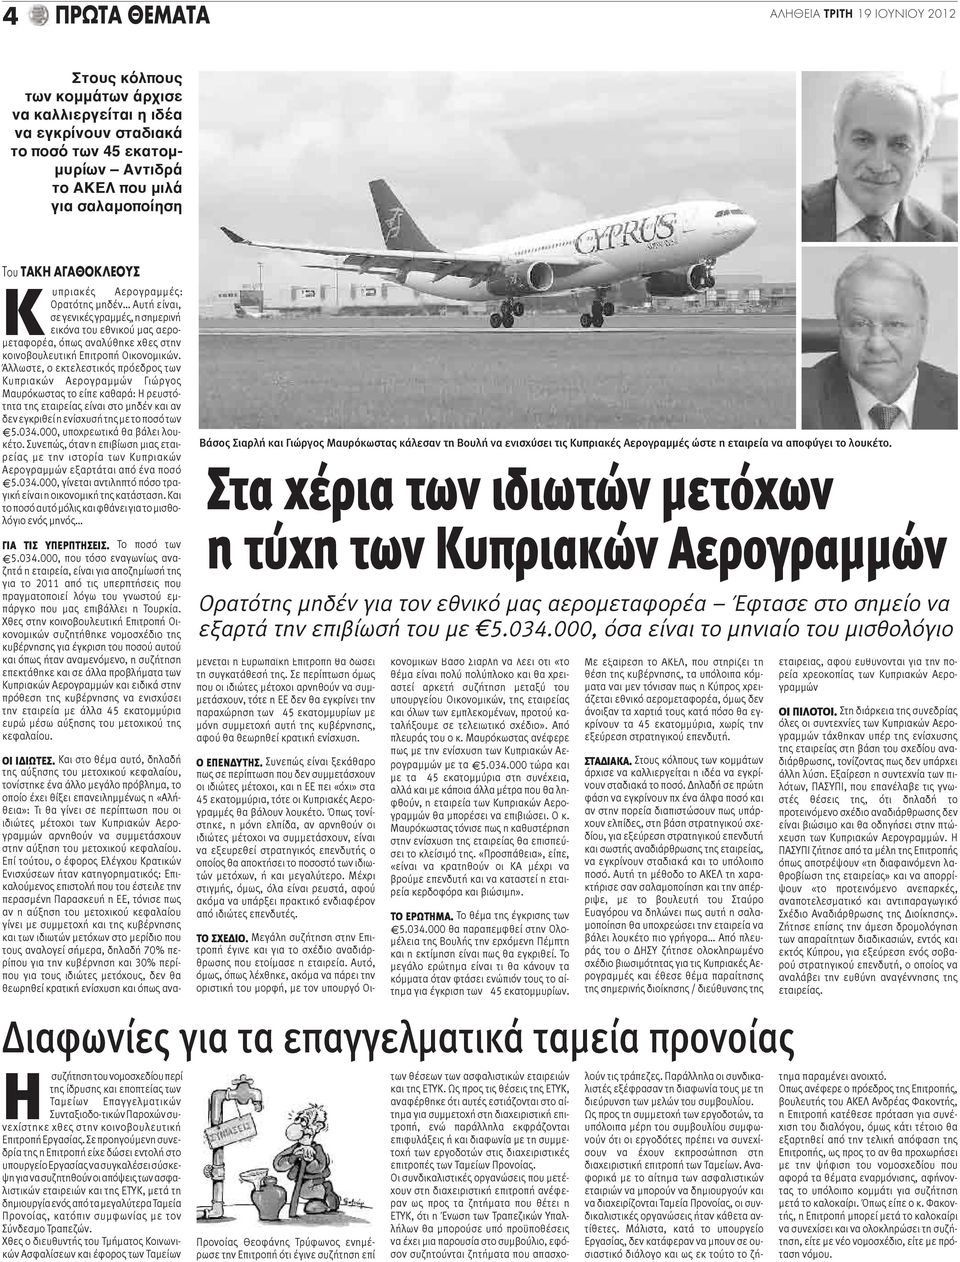 Άλλωστε, ο εκτελεστικός πρόεδρος των Κυπριακών Αερογραμμών Γιώργος Μαυρόκωστας το είπε καθαρά: Η ρευστότητα της εταιρείας είναι στο μηδέν και αν δεν εγκριθεί η ενίσχυσή της με το ποσό των 5.034.